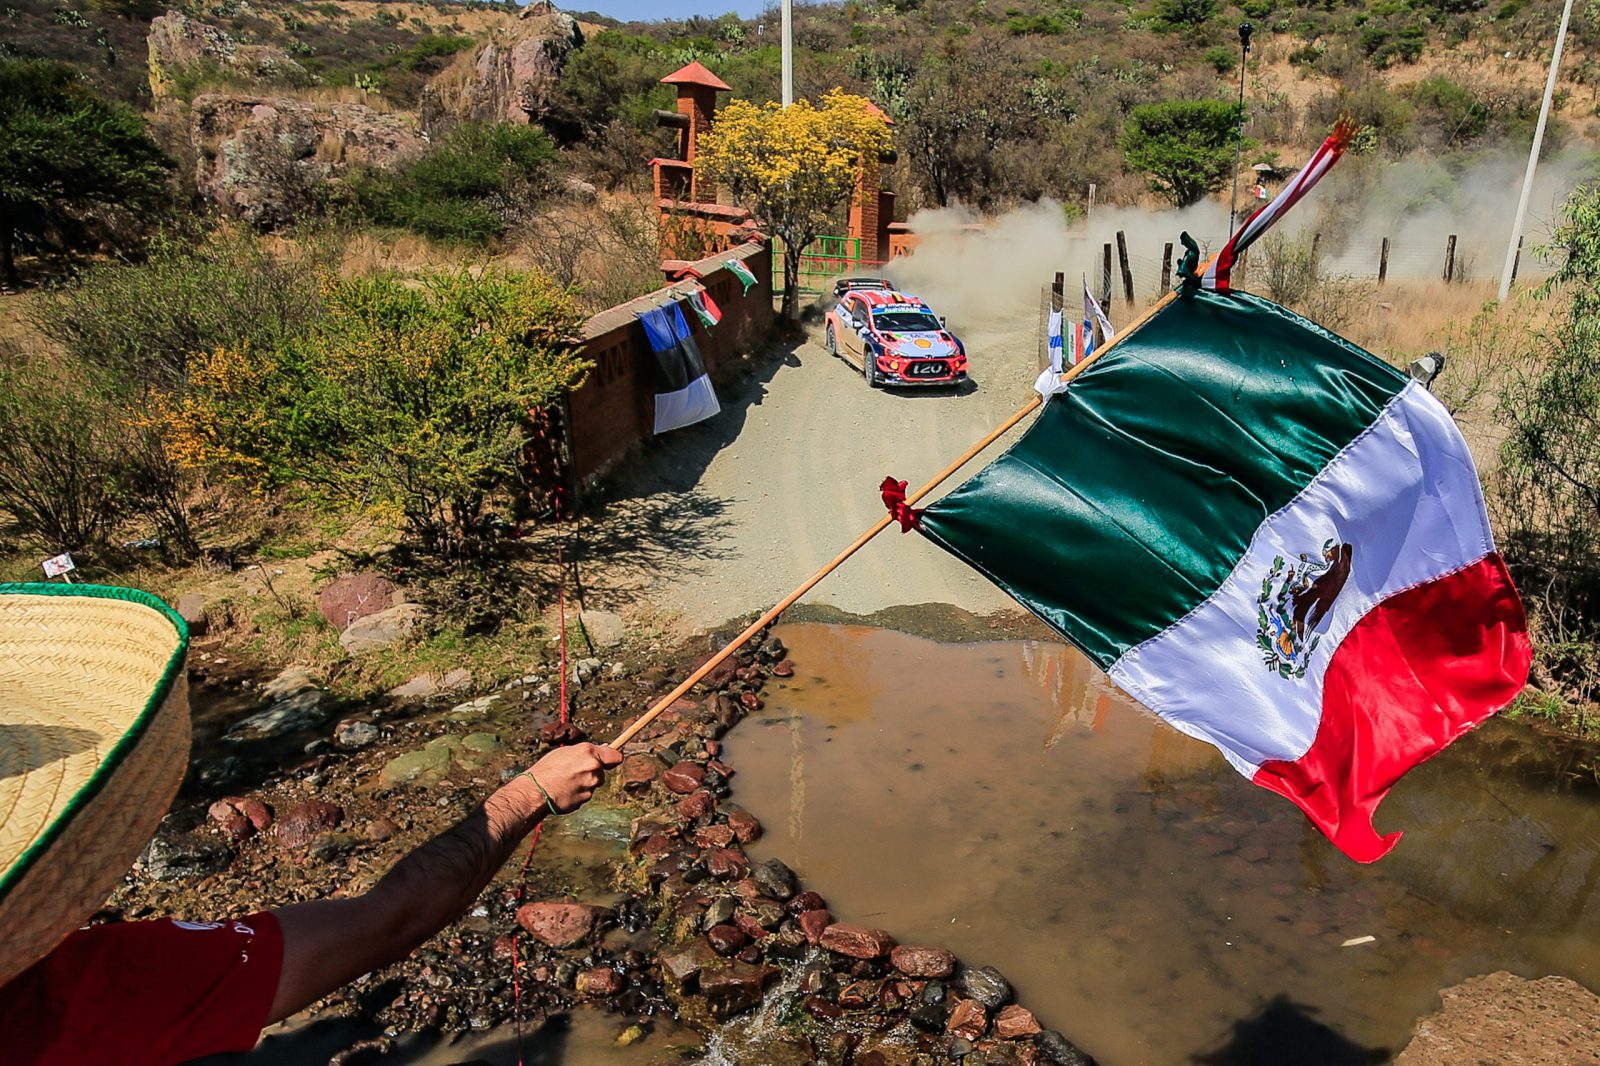 GRANDES CAMBIOS EN LA TEMPORADA 2020 DEL WRC